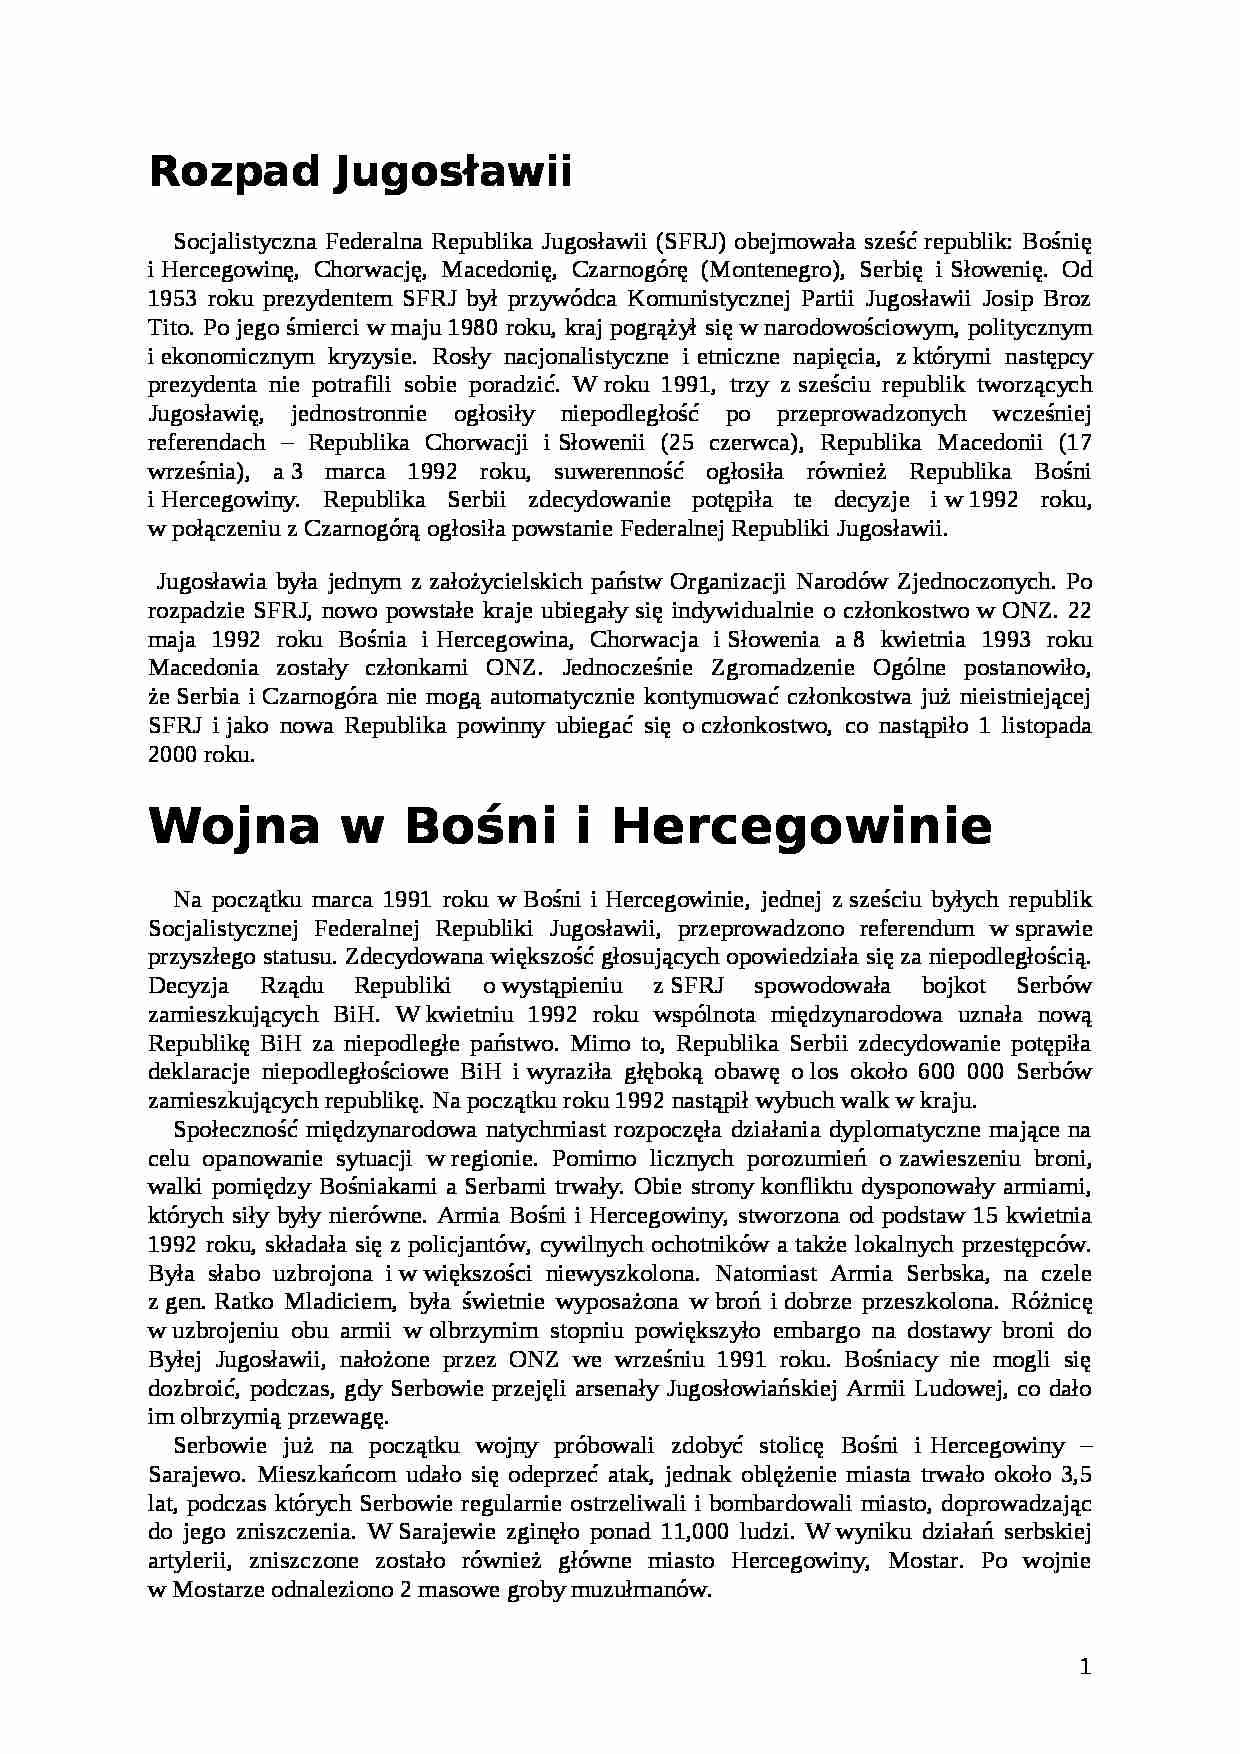 Referat - Rozpad Jugosławii - strona 1